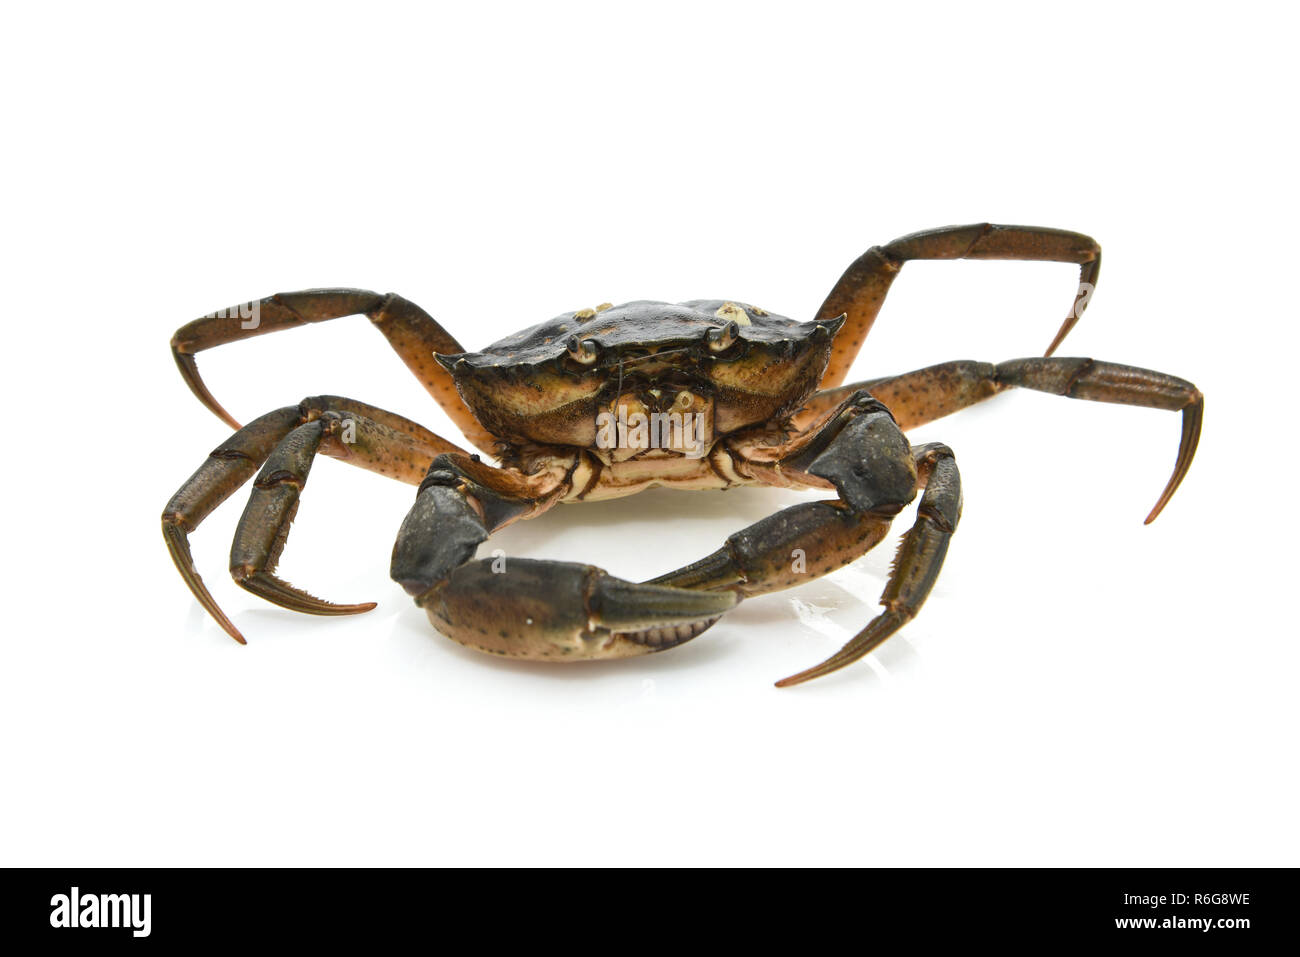 Crab. Black sea crustacean Stock Photo